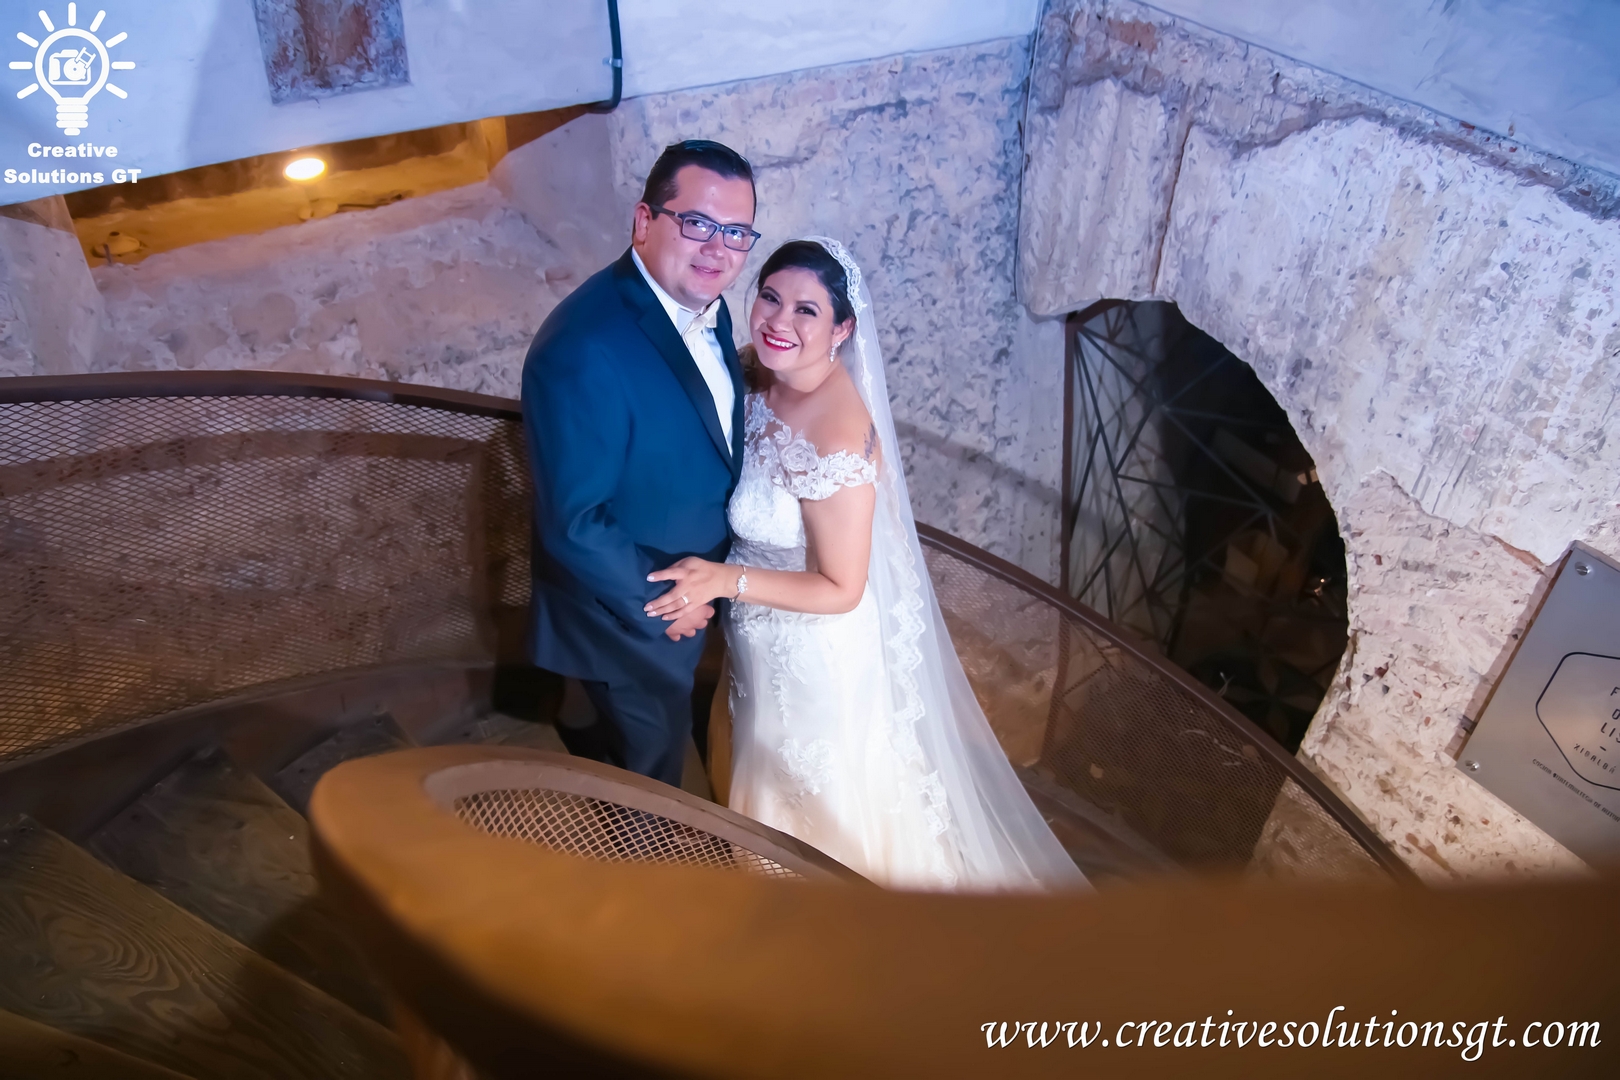 servicio de fotografia para bodas en guatemala (4)